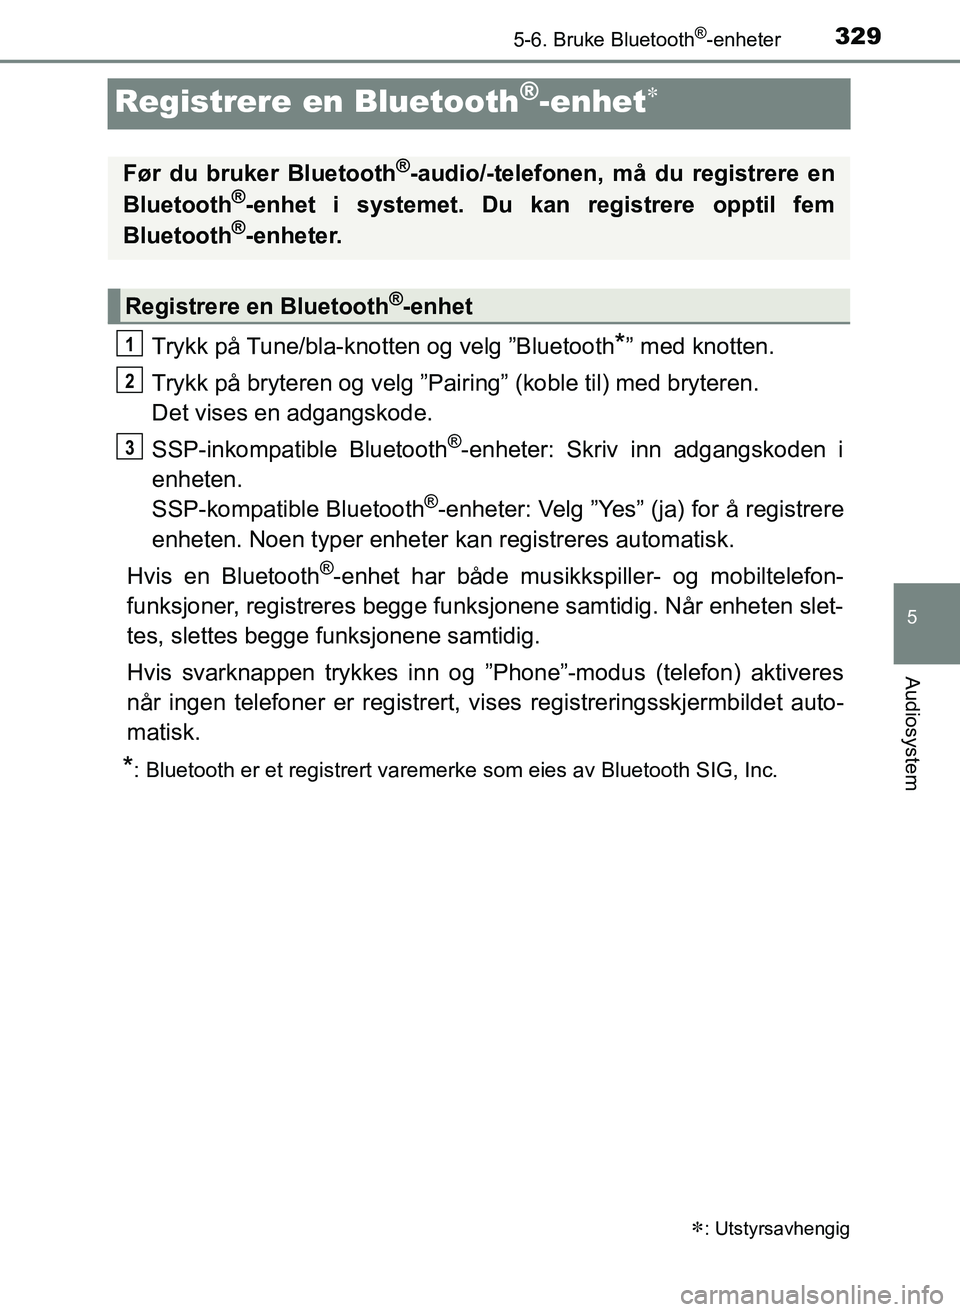 TOYOTA YARIS 2018  Instruksjoner for bruk (in Norwegian) 3295-6. Bruke Bluetooth®-enheter
5
Audiosystem
YARIS_HV_OM_Europe_OM52J66NO
Registrere en Bluetooth®-enhet
Trykk på Tune/bla-knotten og velg ”Bluetooth*” med knotten.
Trykk på bryteren og v